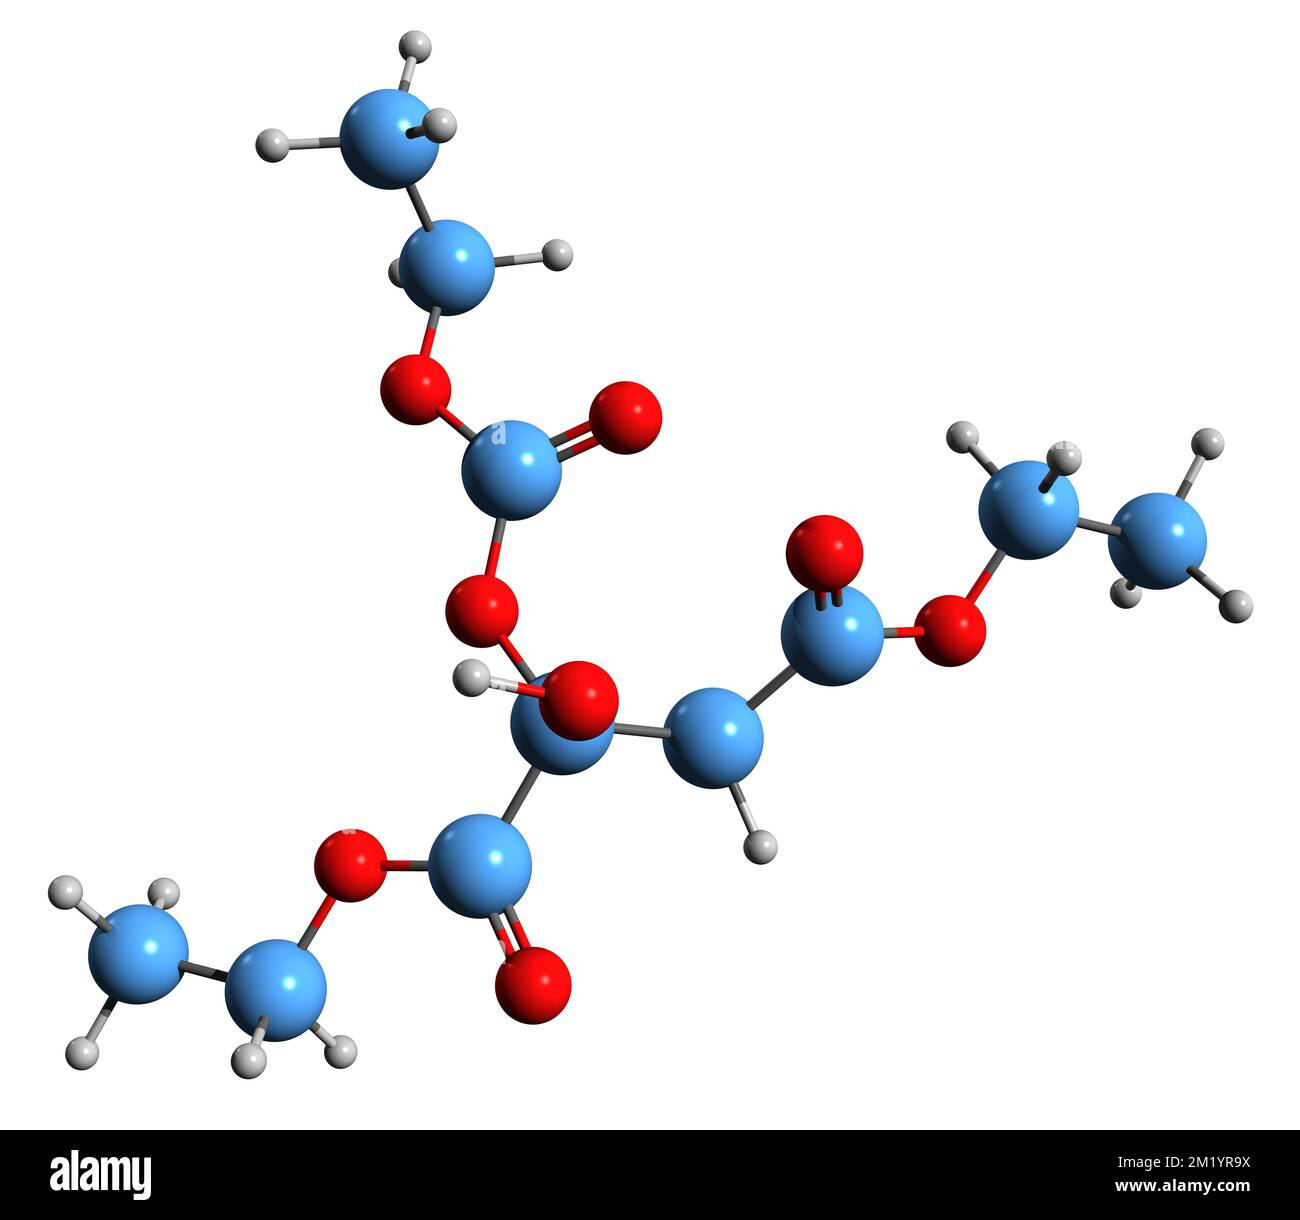 3D-Bild der Triethylcitrat-Skelettformel - molekularchemische Struktur des auf weißem Hintergrund isolierten Citronensäureäthylesters Stockfoto